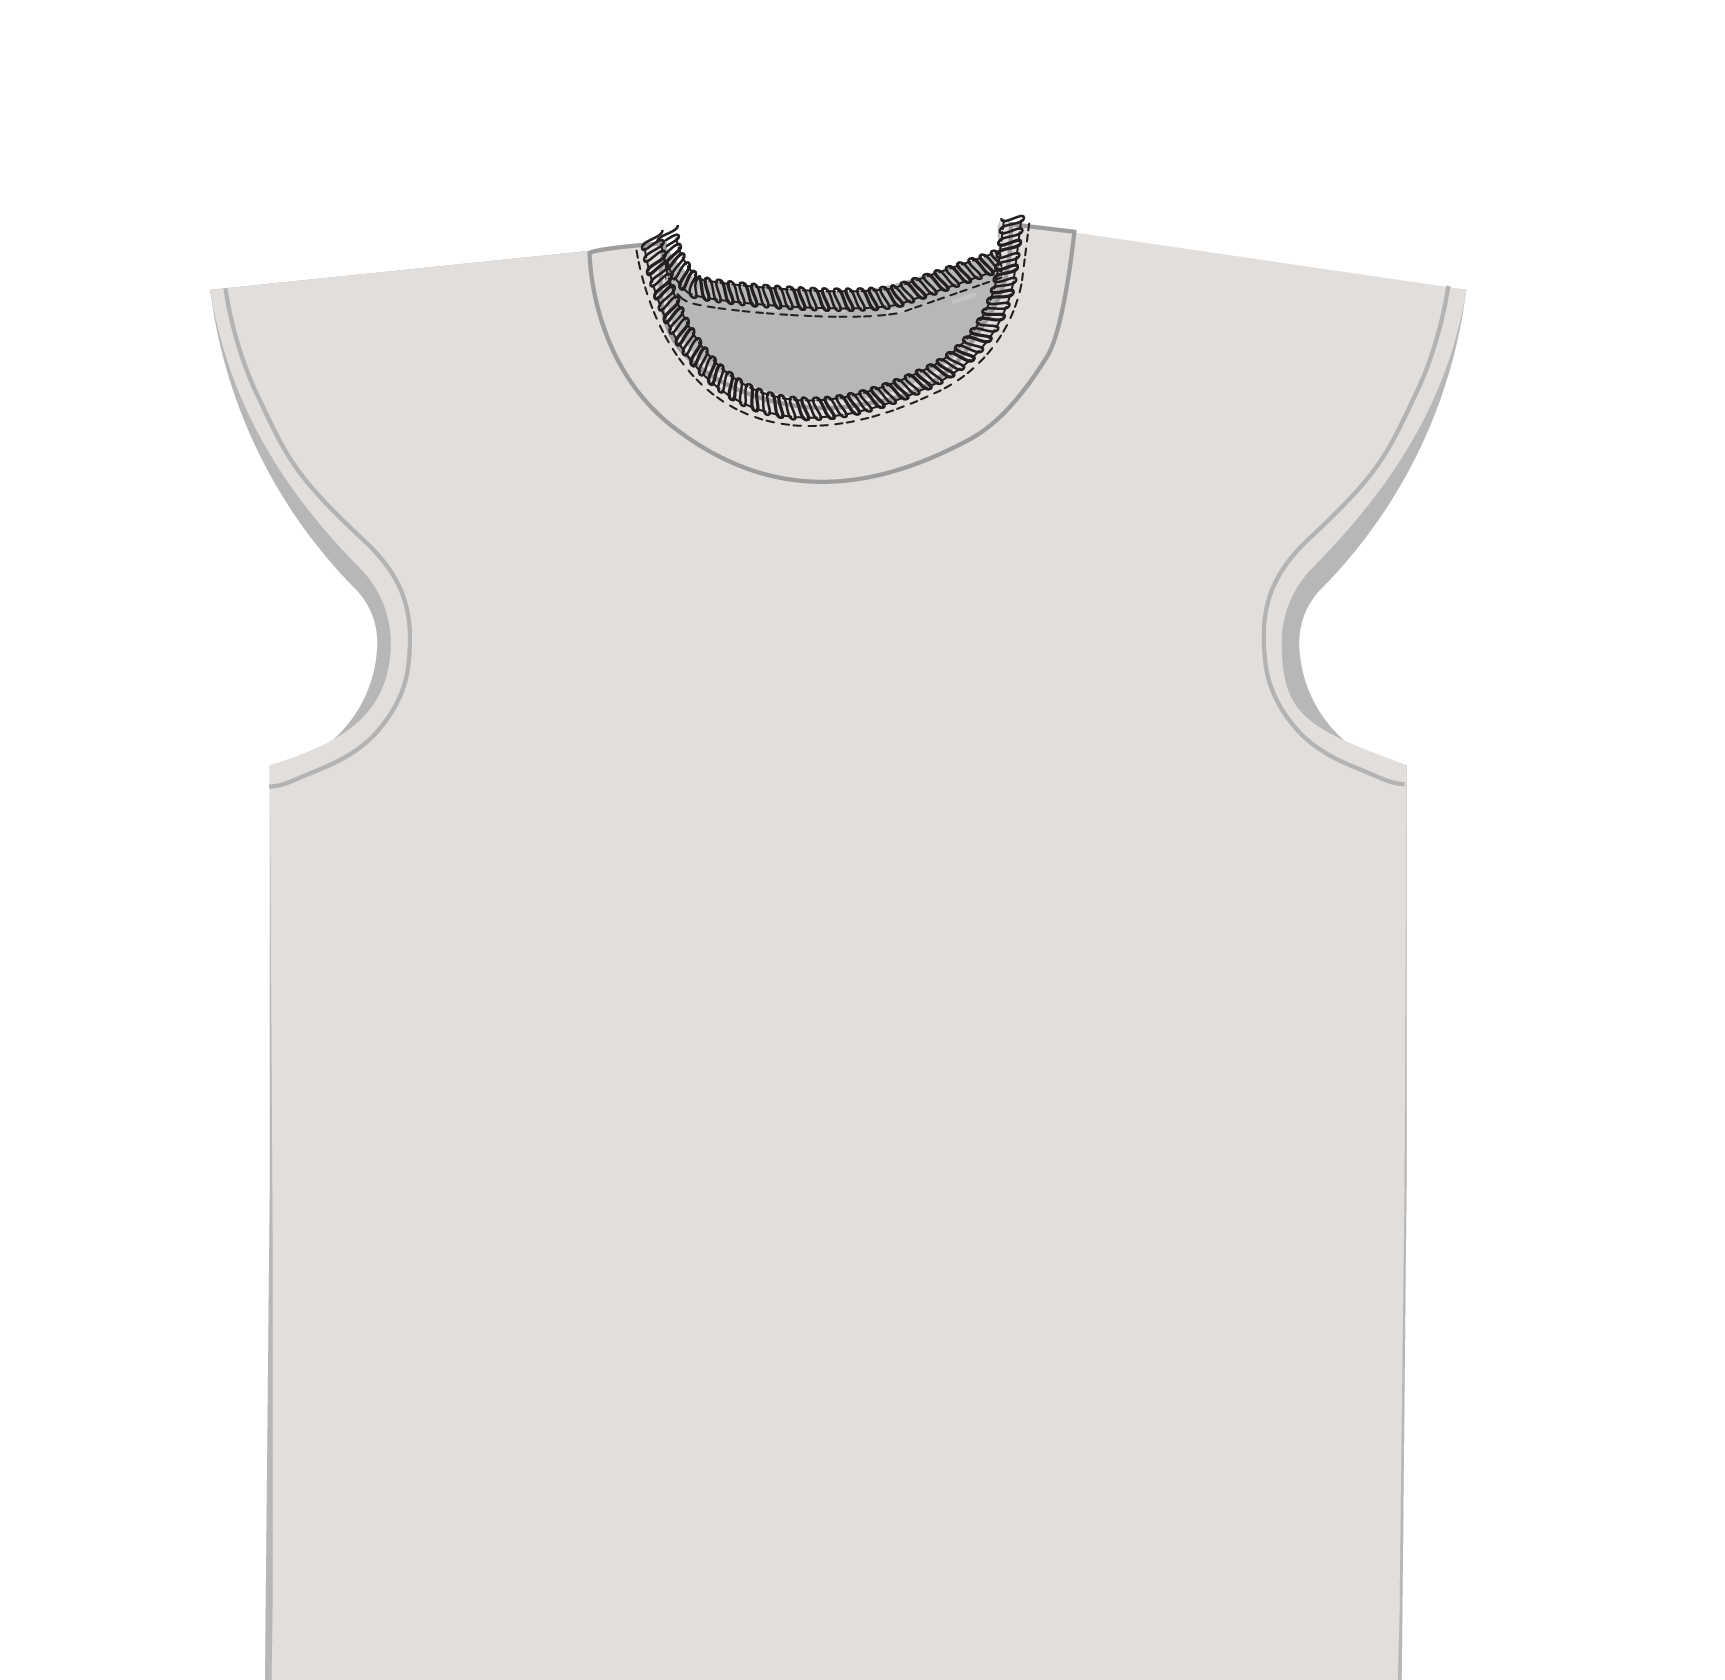 Schulterpolster Shirt: Bündchen annähen